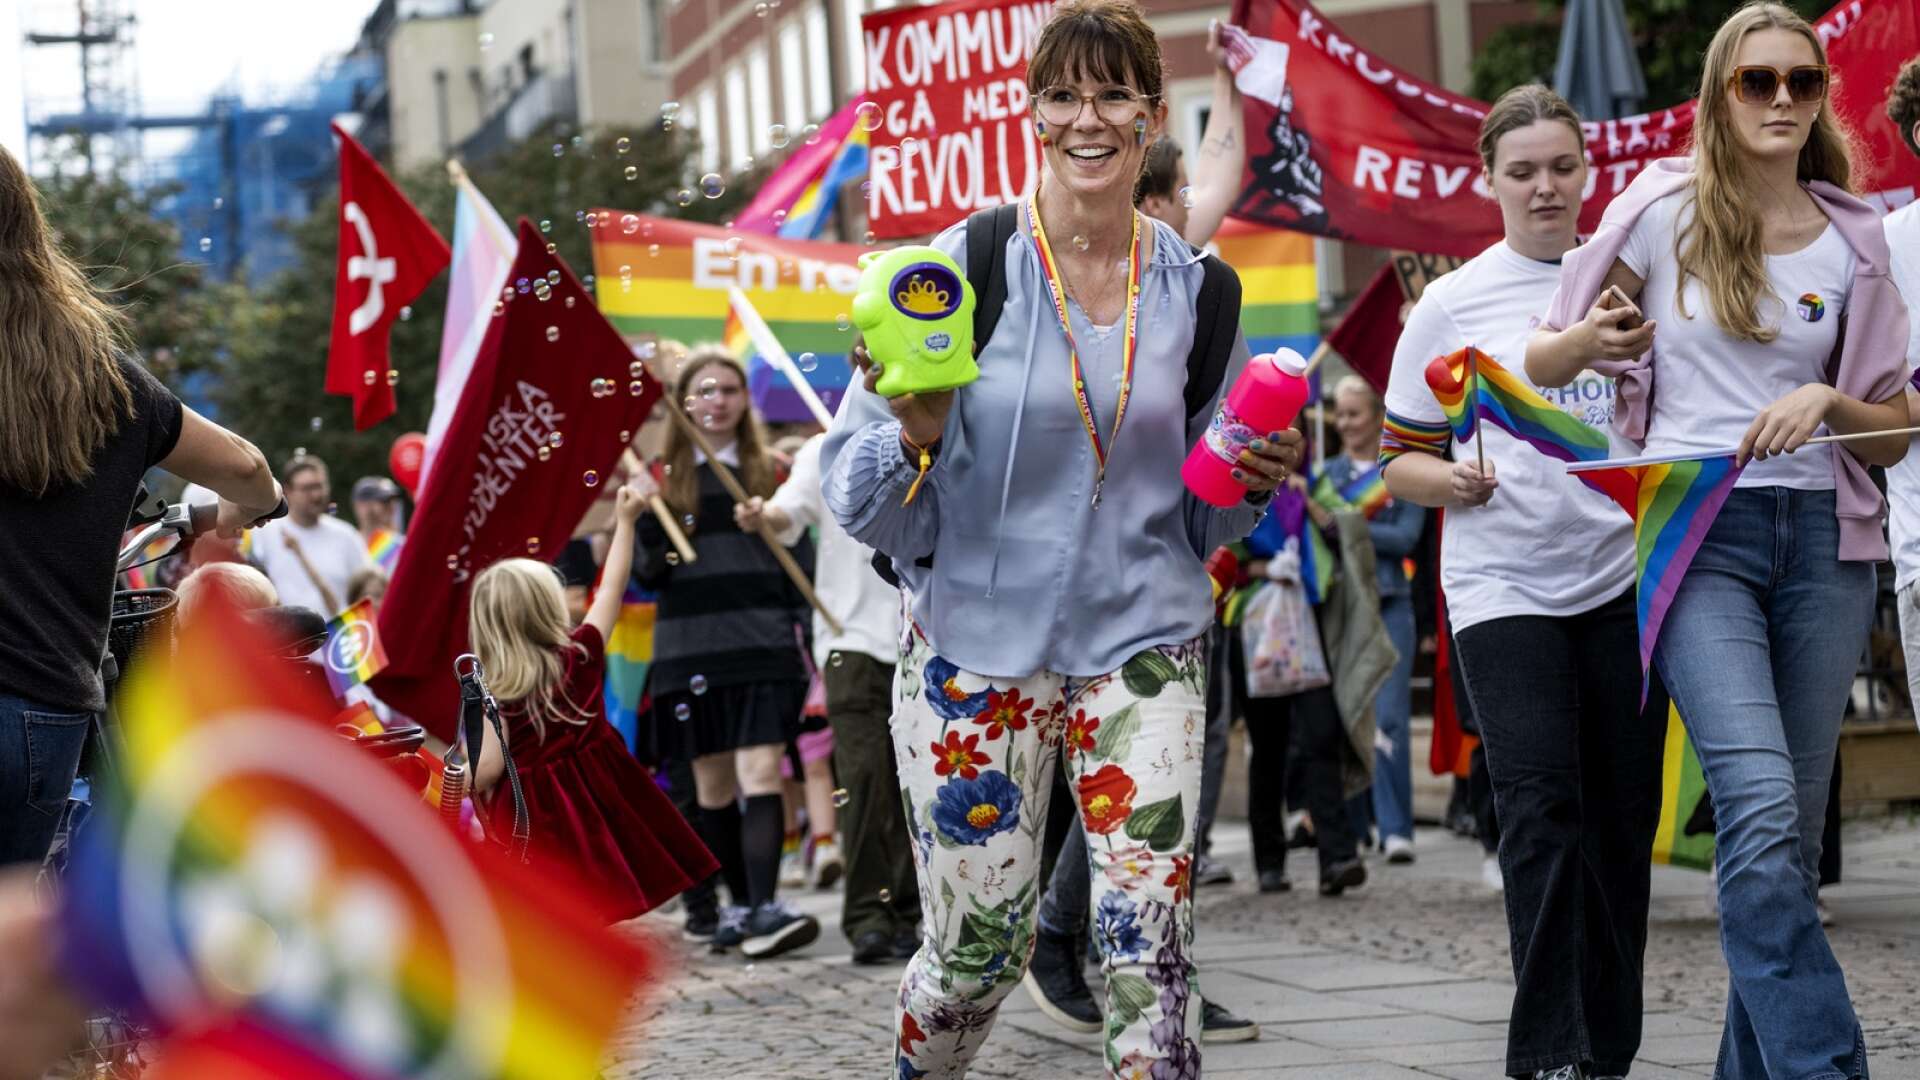 Kommunister tilläts att delta och gå i Pridetåget vilket i sig är förkastligt. De publicerades också på Wermland Prides sociala medier, skriver Rebecka Ingsmy med flera. (Alla personer på bilden förknippas inte nödvändigtvis med kommunisterna.)